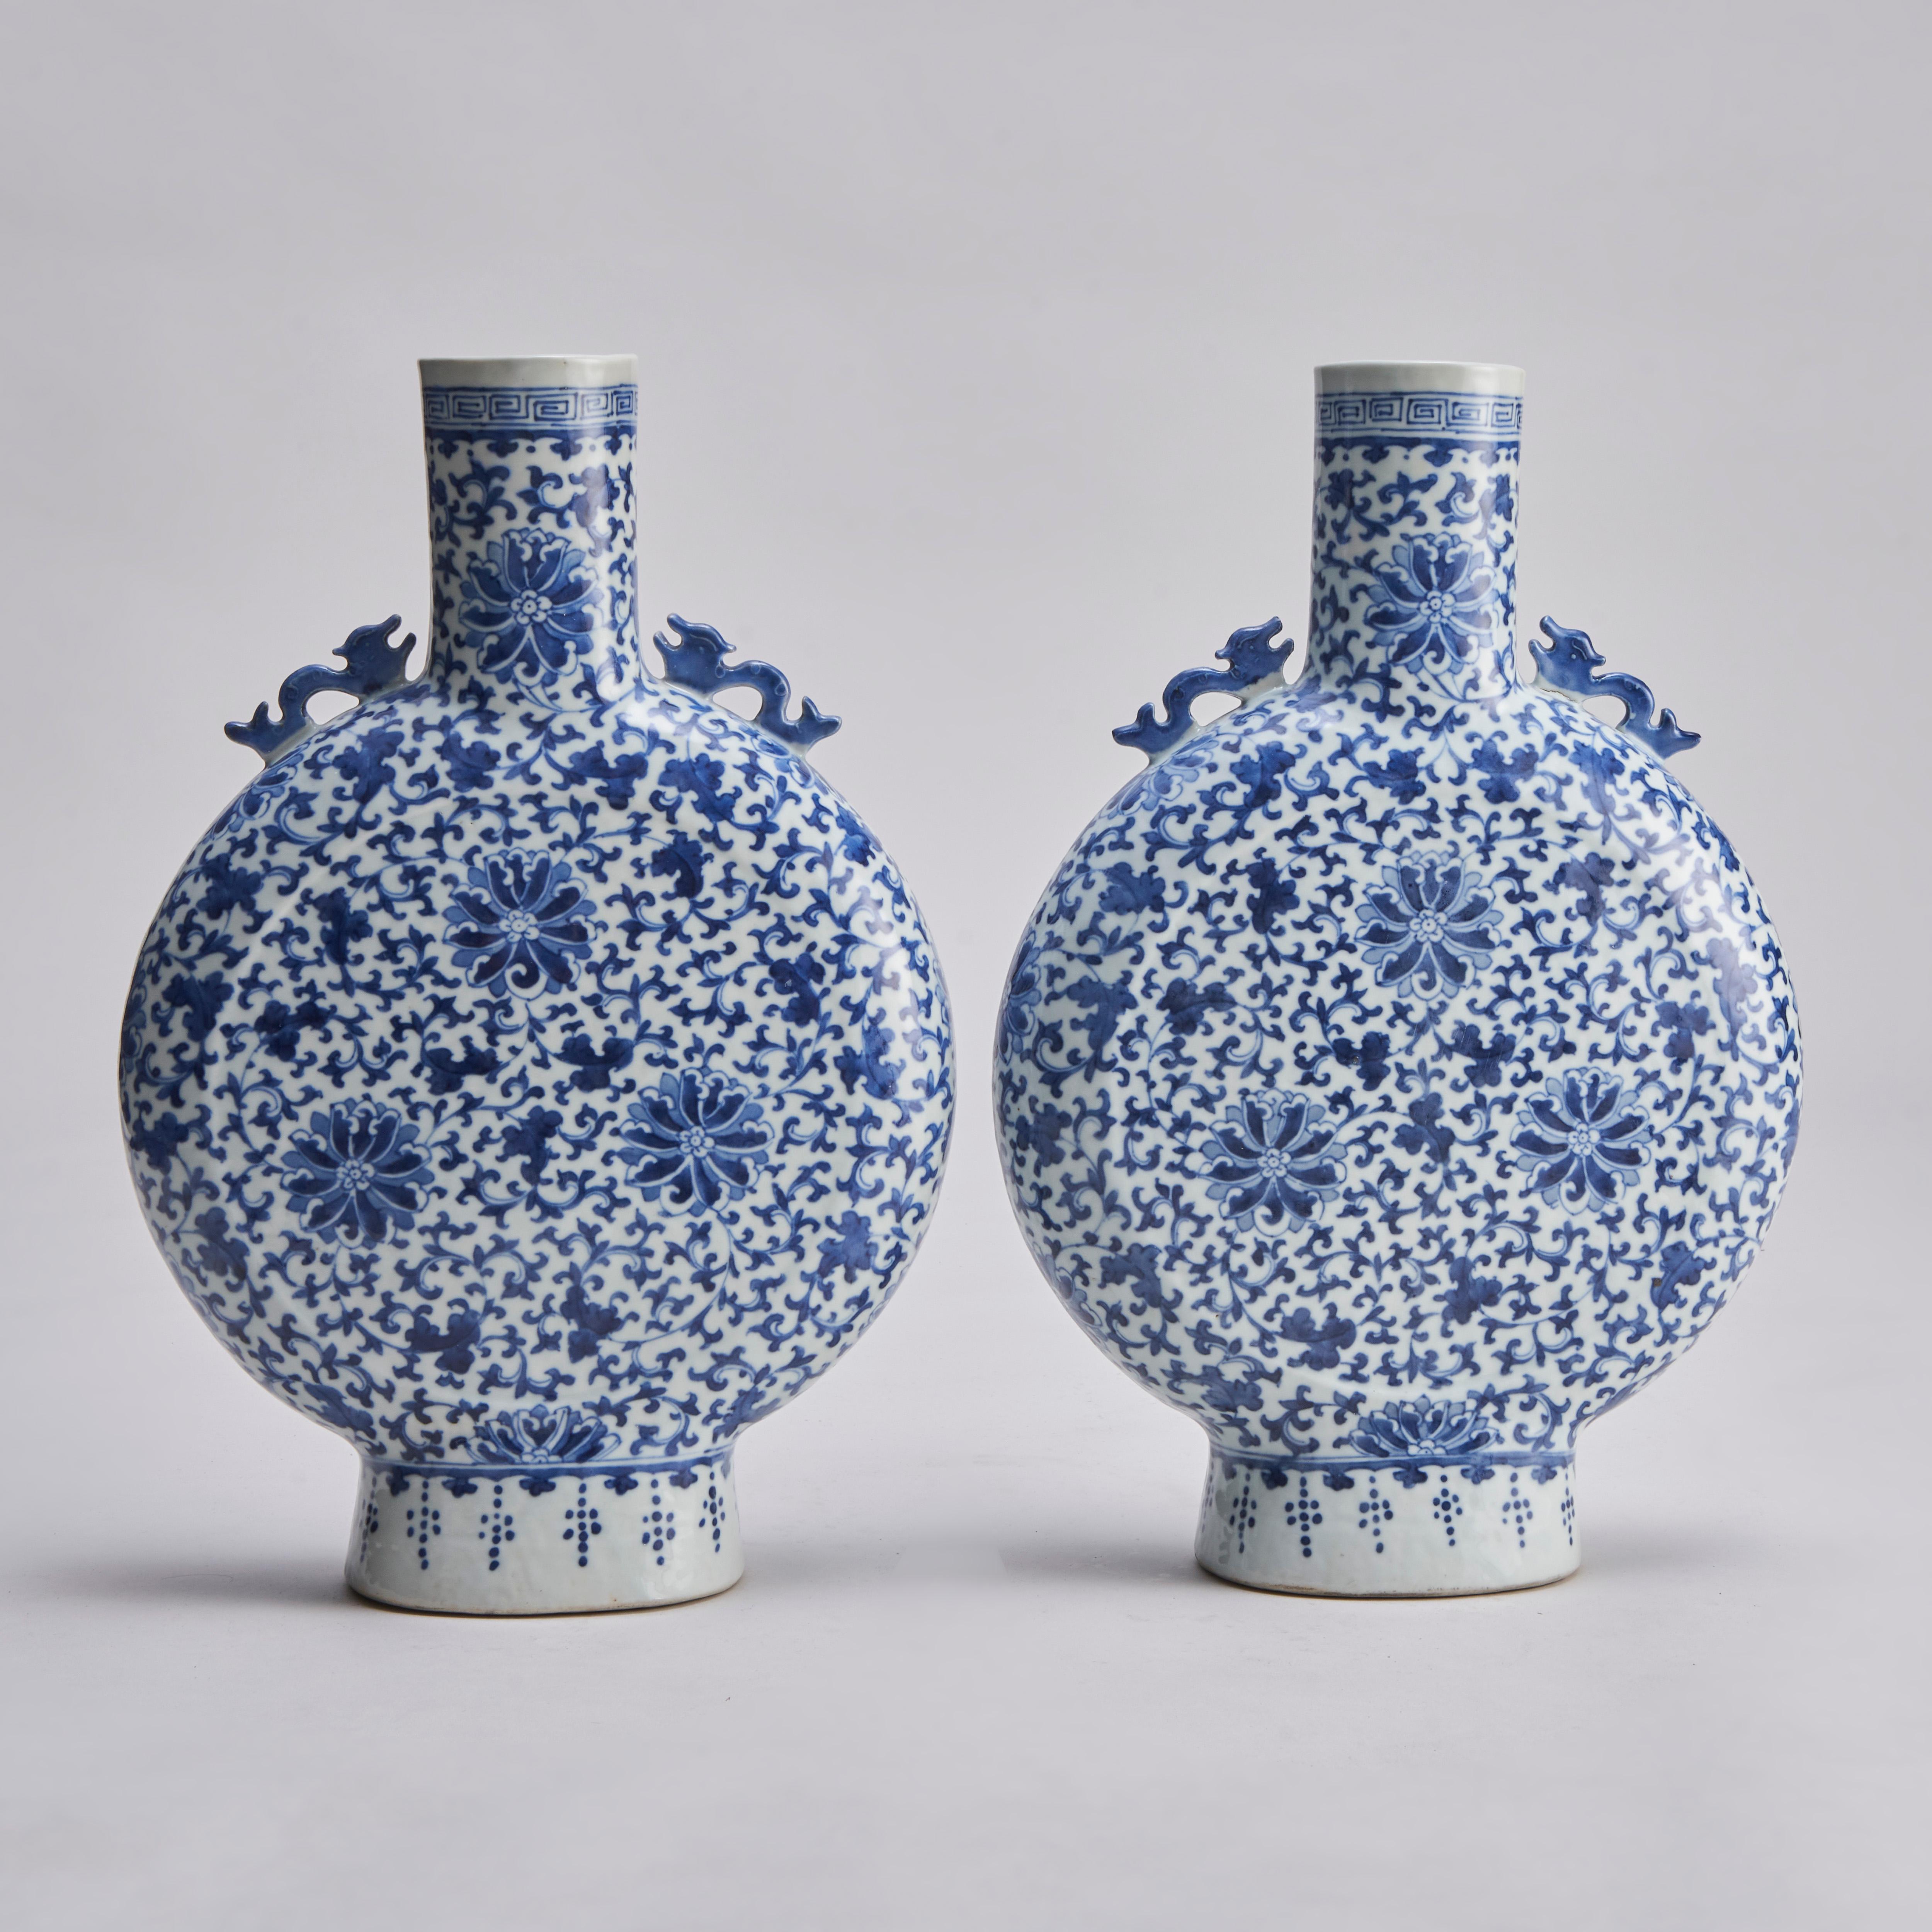 Paire de vases de lune/pèlerins chinois du XIXe siècle, de couleur bleu et blanc, avec un décor d'épaule de dragon moulé et un motif allover de fleurs de type clématite sur un fond feuillu.

Le col est orné d'une bordure en méandres Xiangyun et